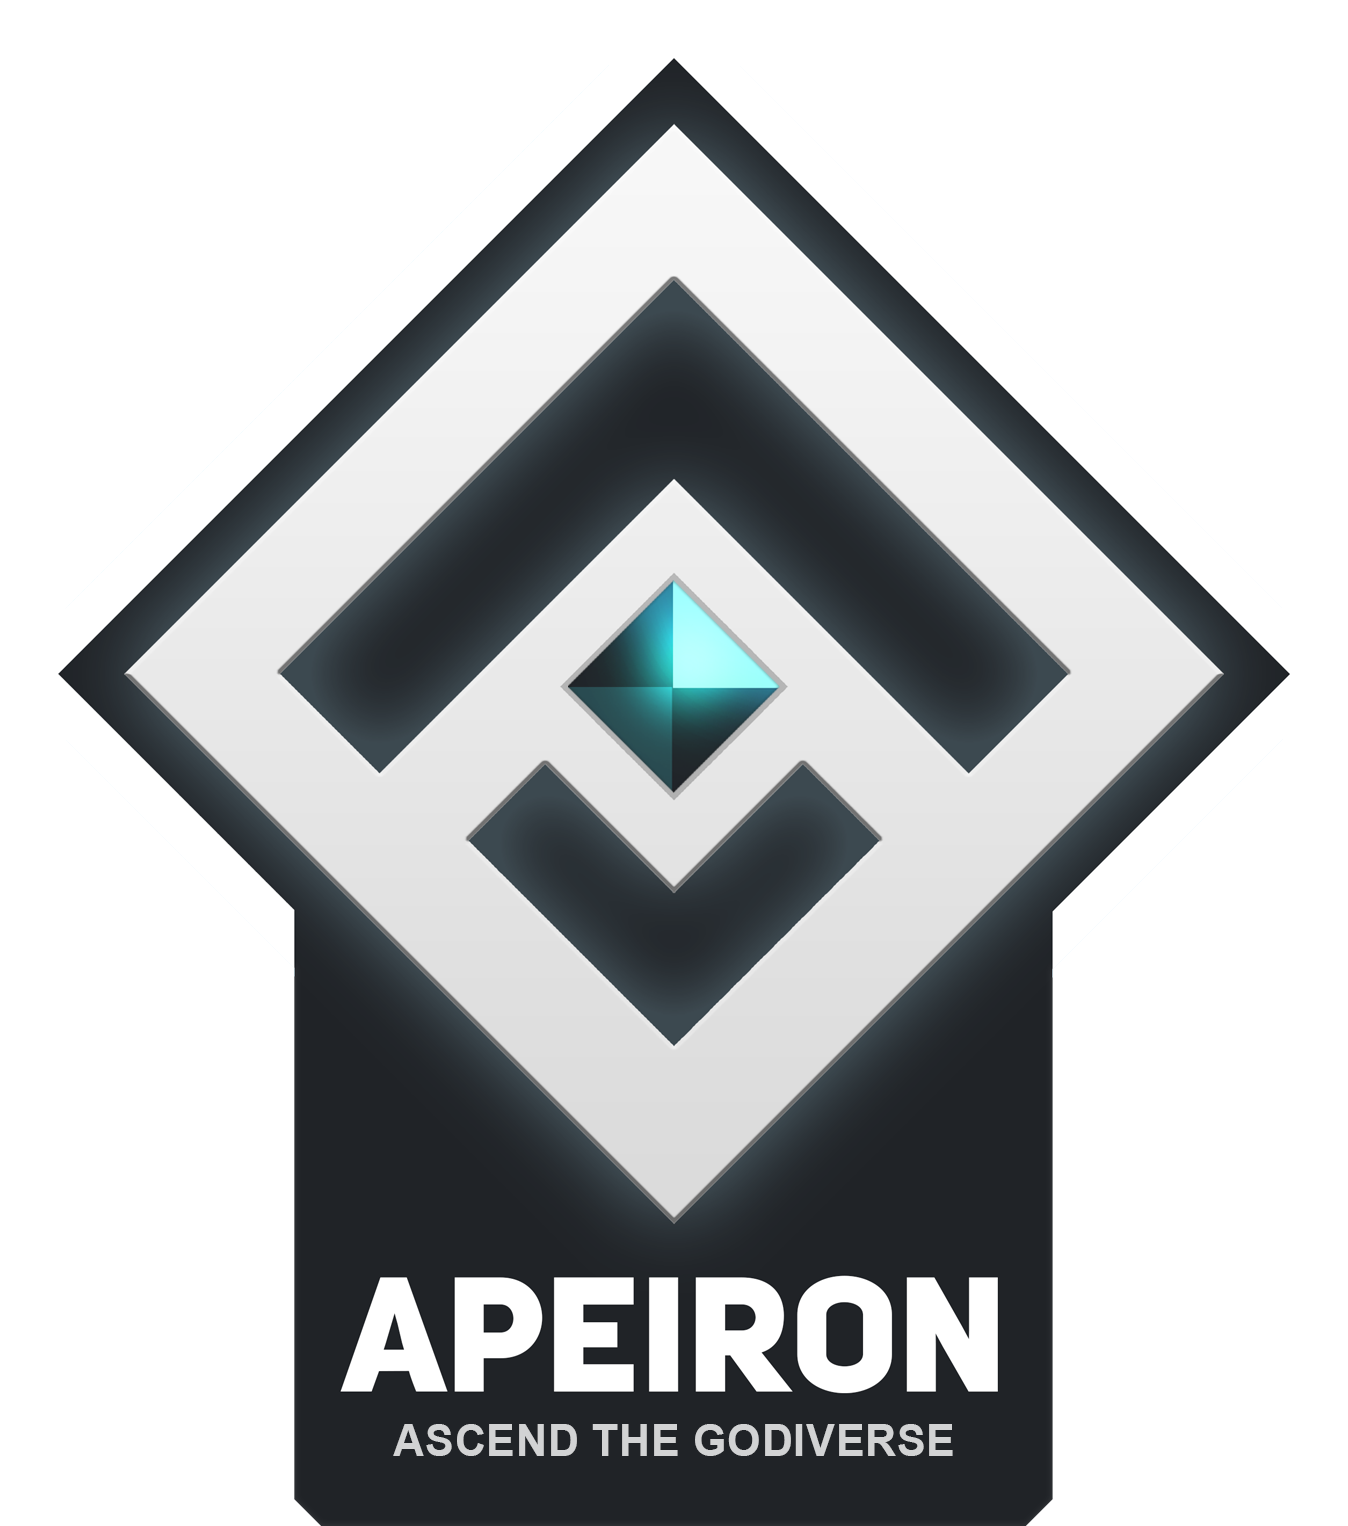 Apeiron